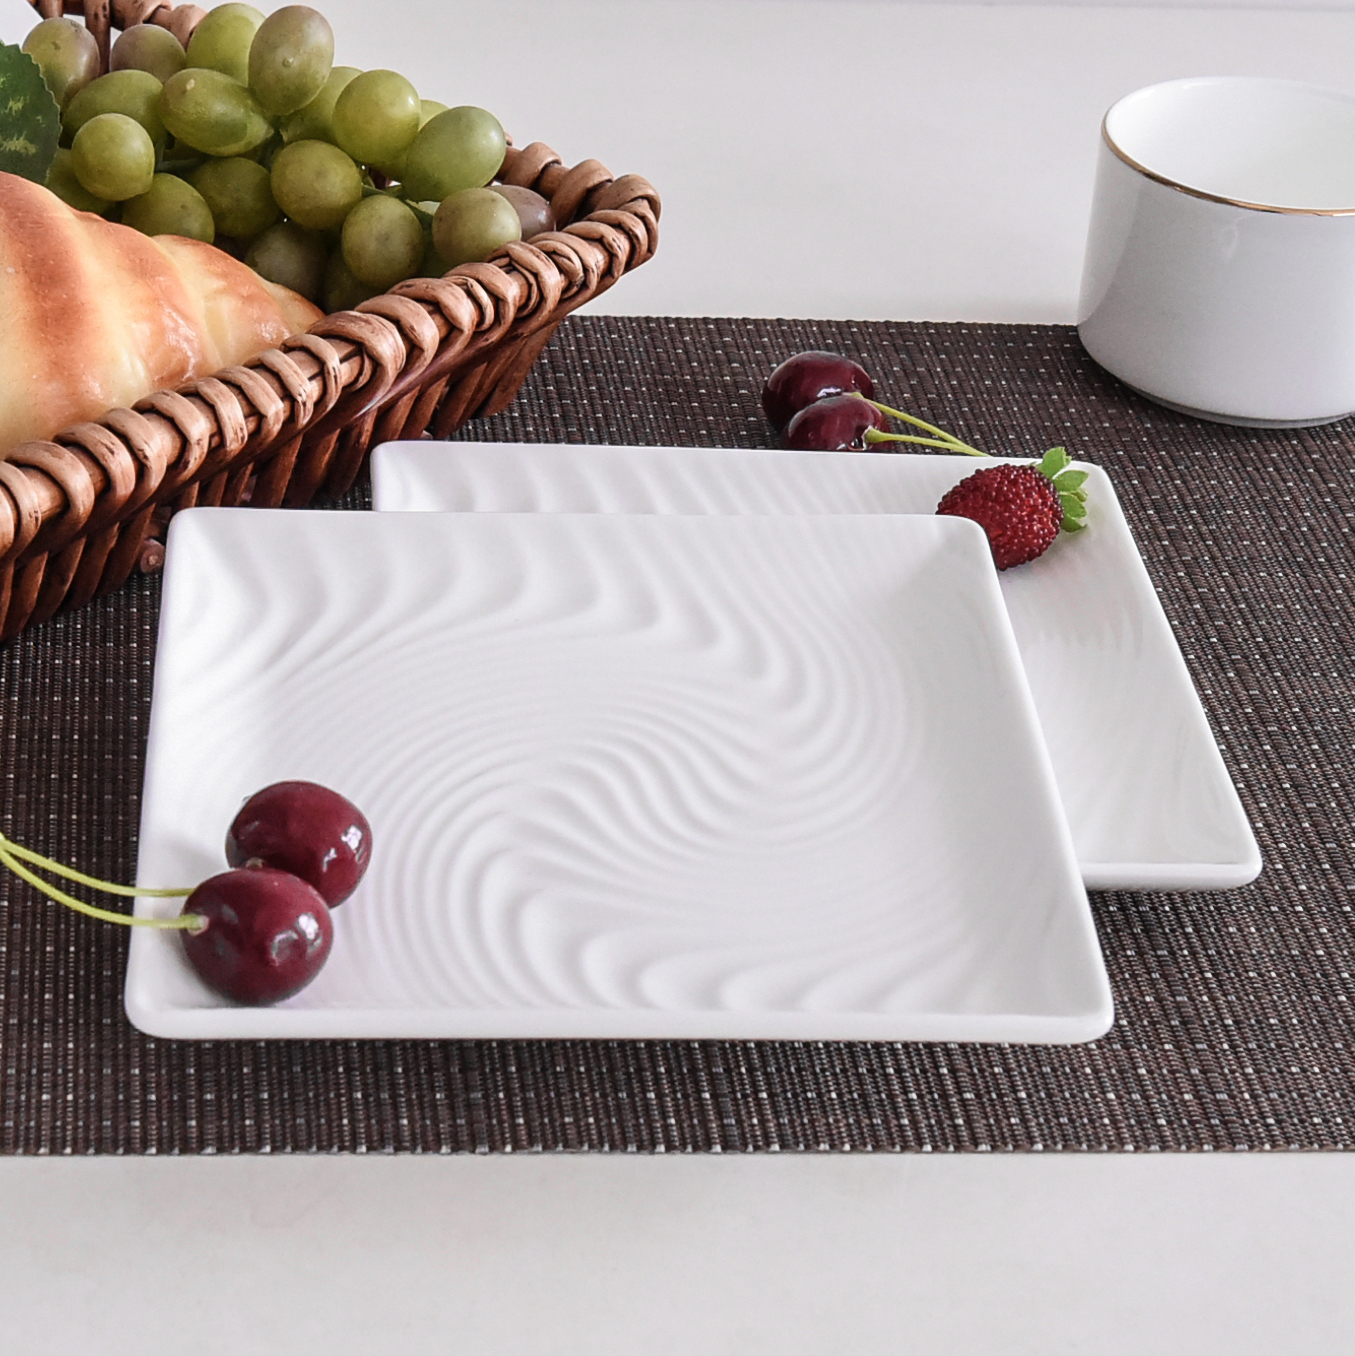 唐山奥美批发创意浮雕盘子 纯白陶瓷西餐盘 骨瓷正方盘餐具